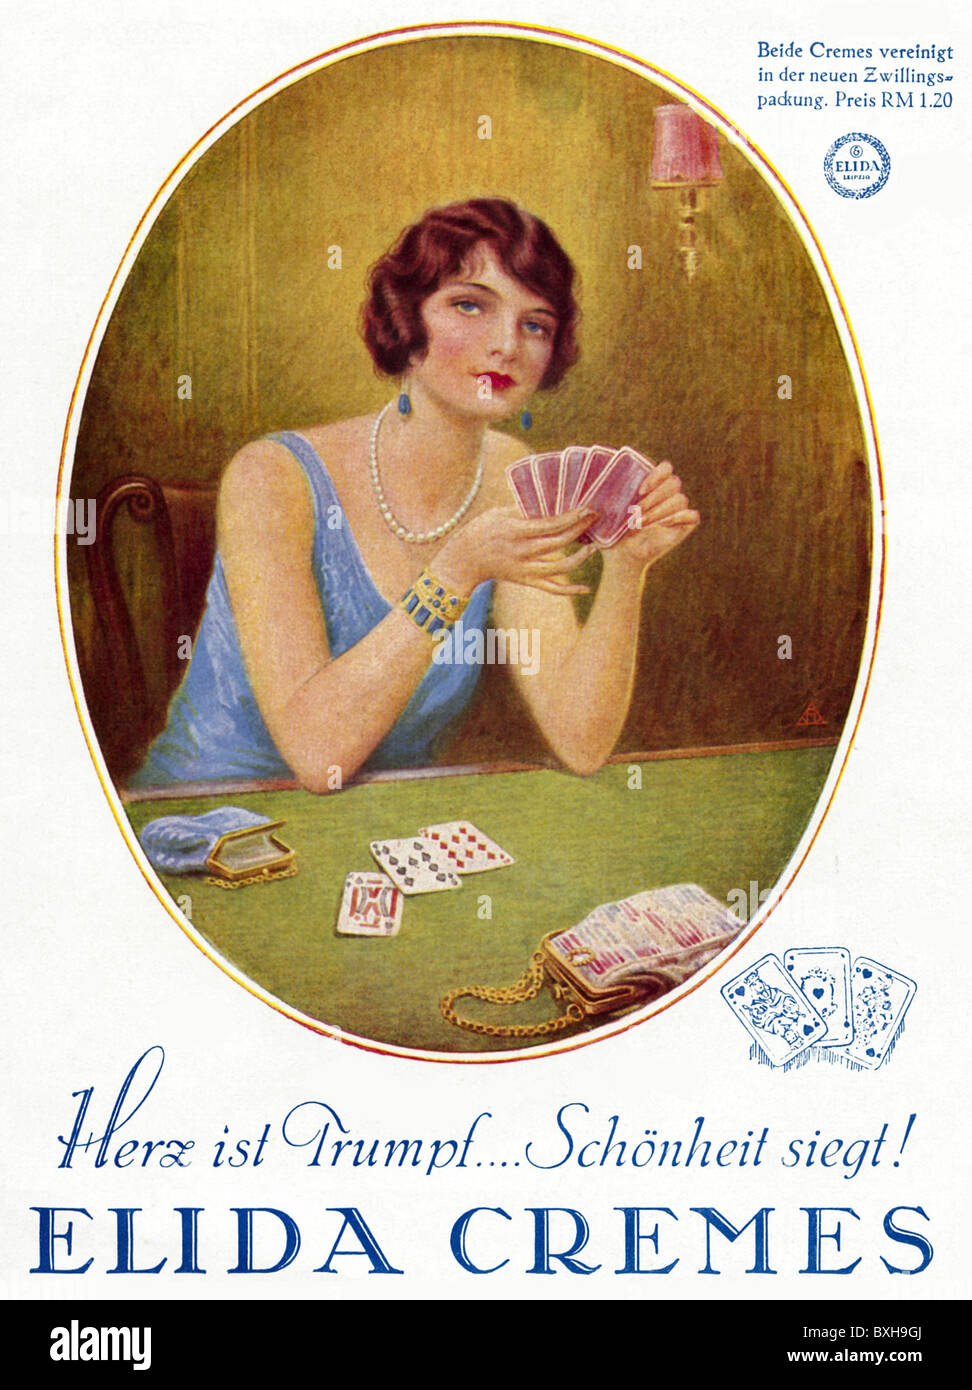 Jeux, jeux de cartes, femme jouant au skat, Allemagne, vers 1929, droits additionnels-Clearences-non disponible Banque D'Images